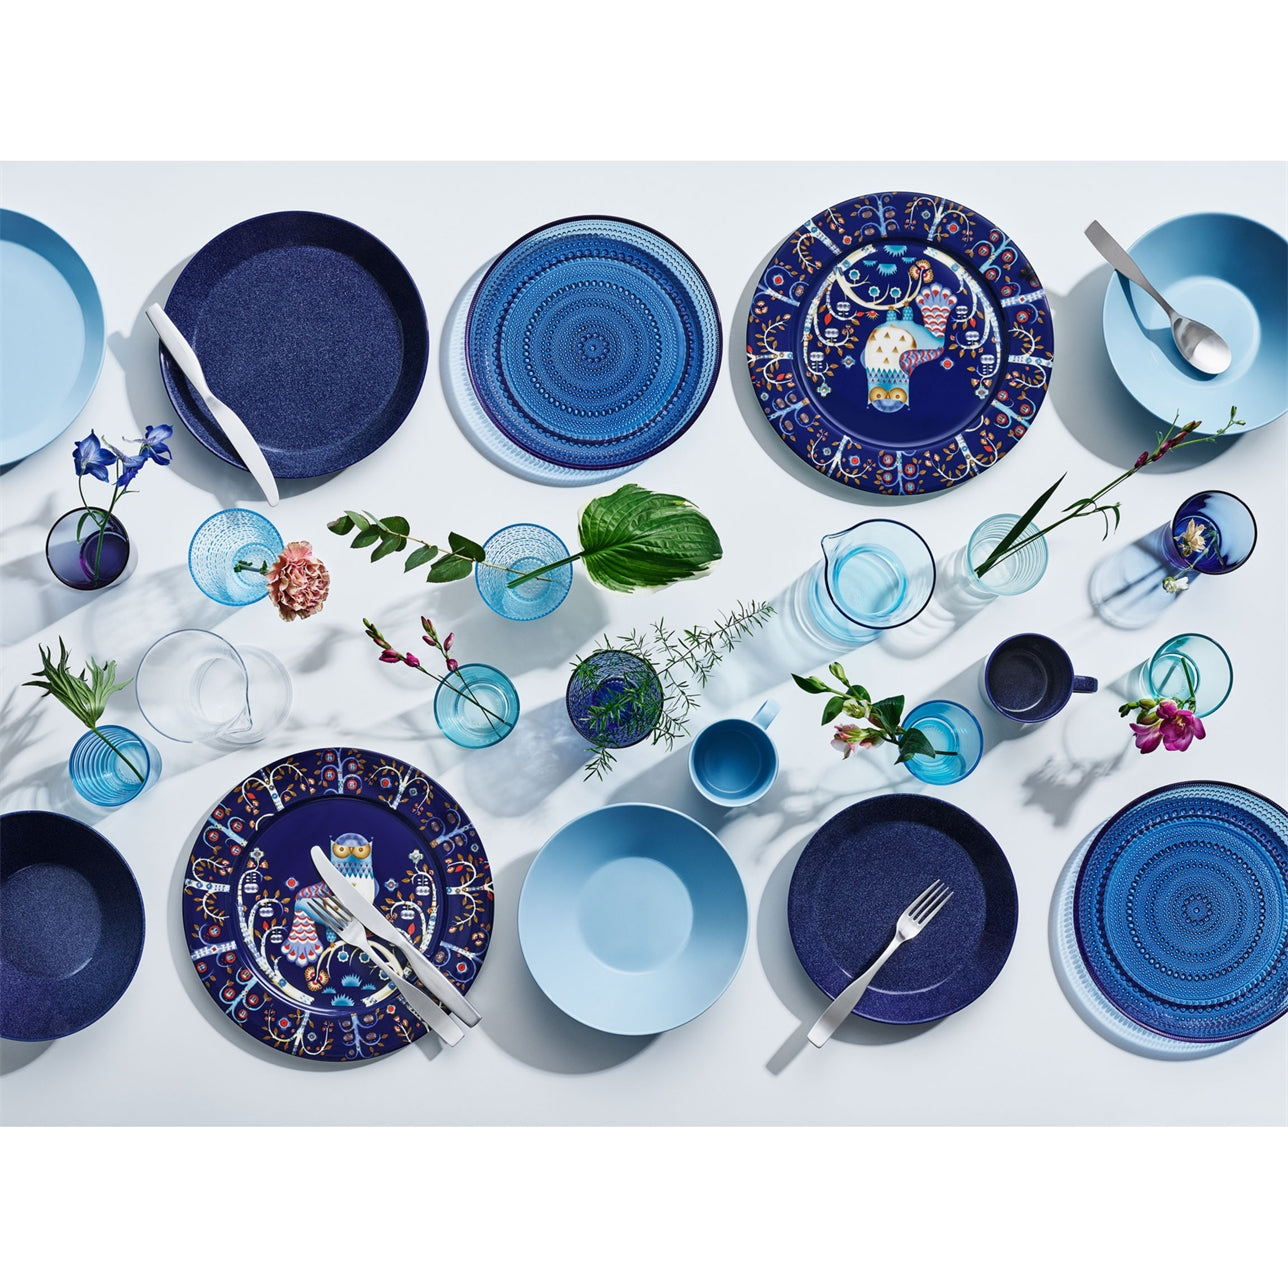 Taika Blue Dinner Plate, 11.75"